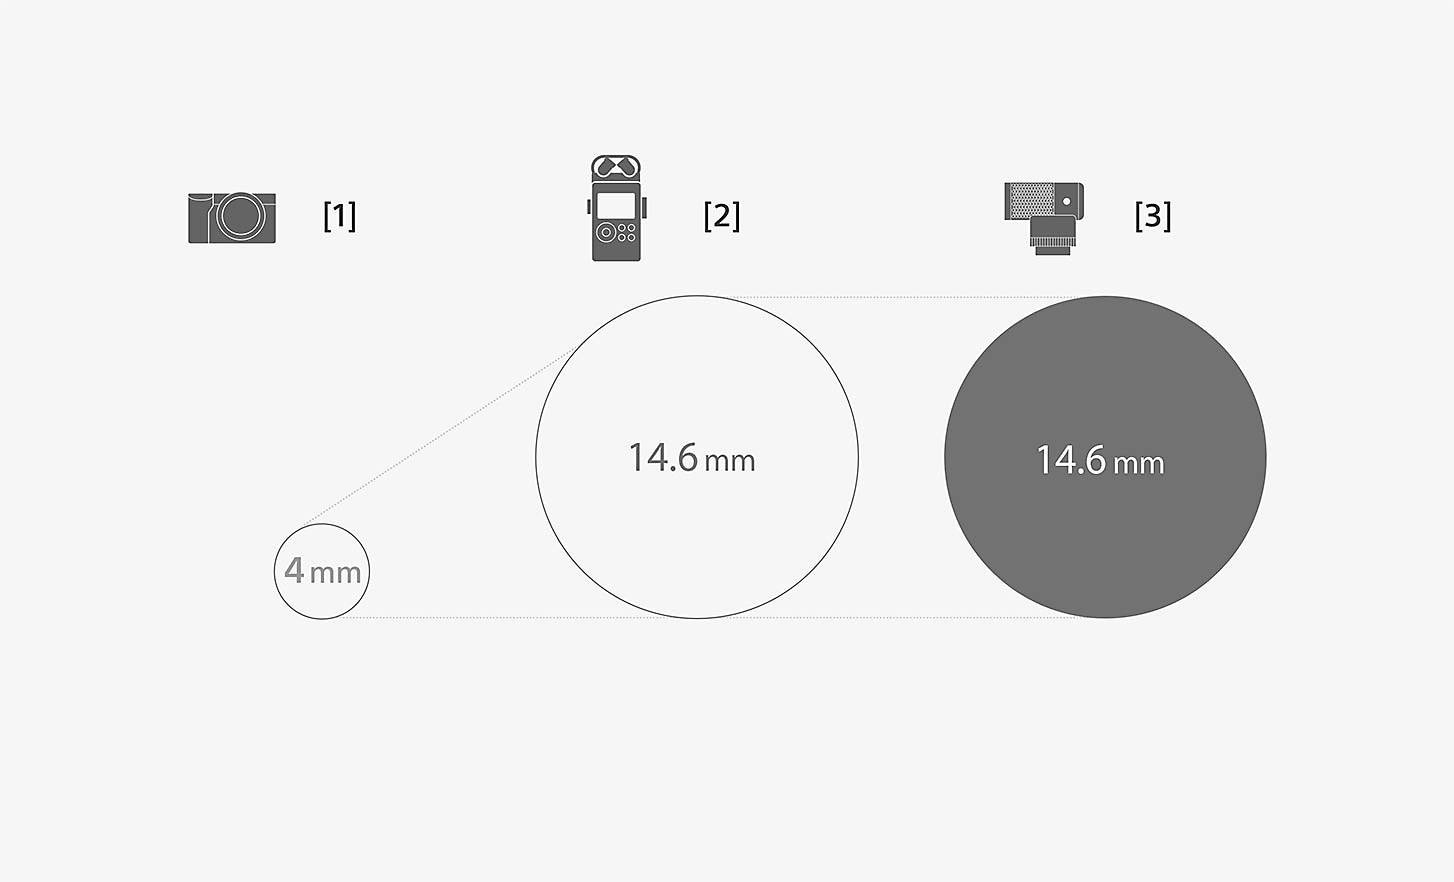 ECM-G1 膠囊式麥克風與標準內建麥克風尺寸比較圖說